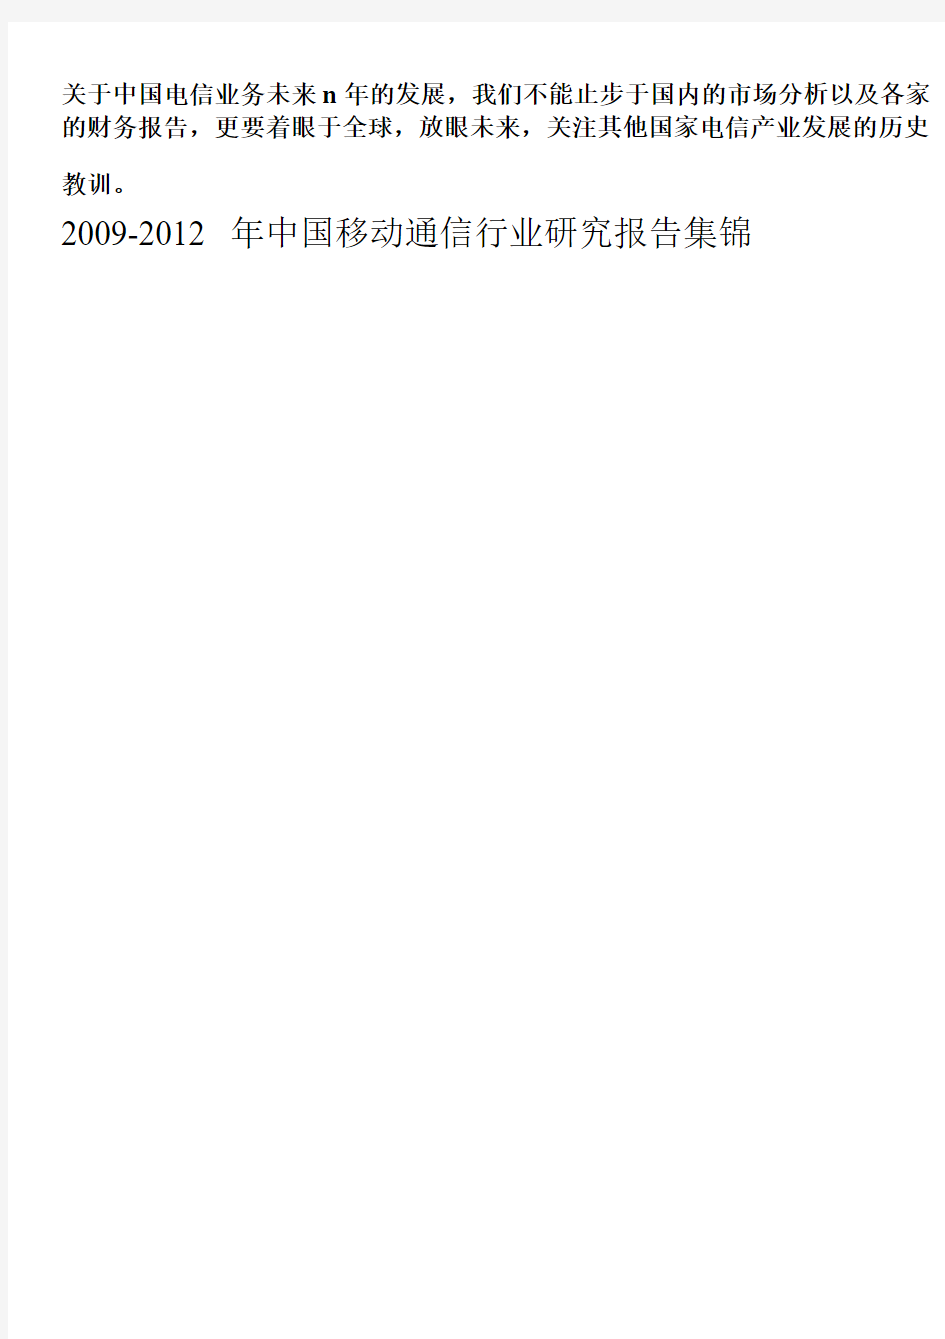 2010-2011中国电信行业移动通信行业发展趋势报告合辑